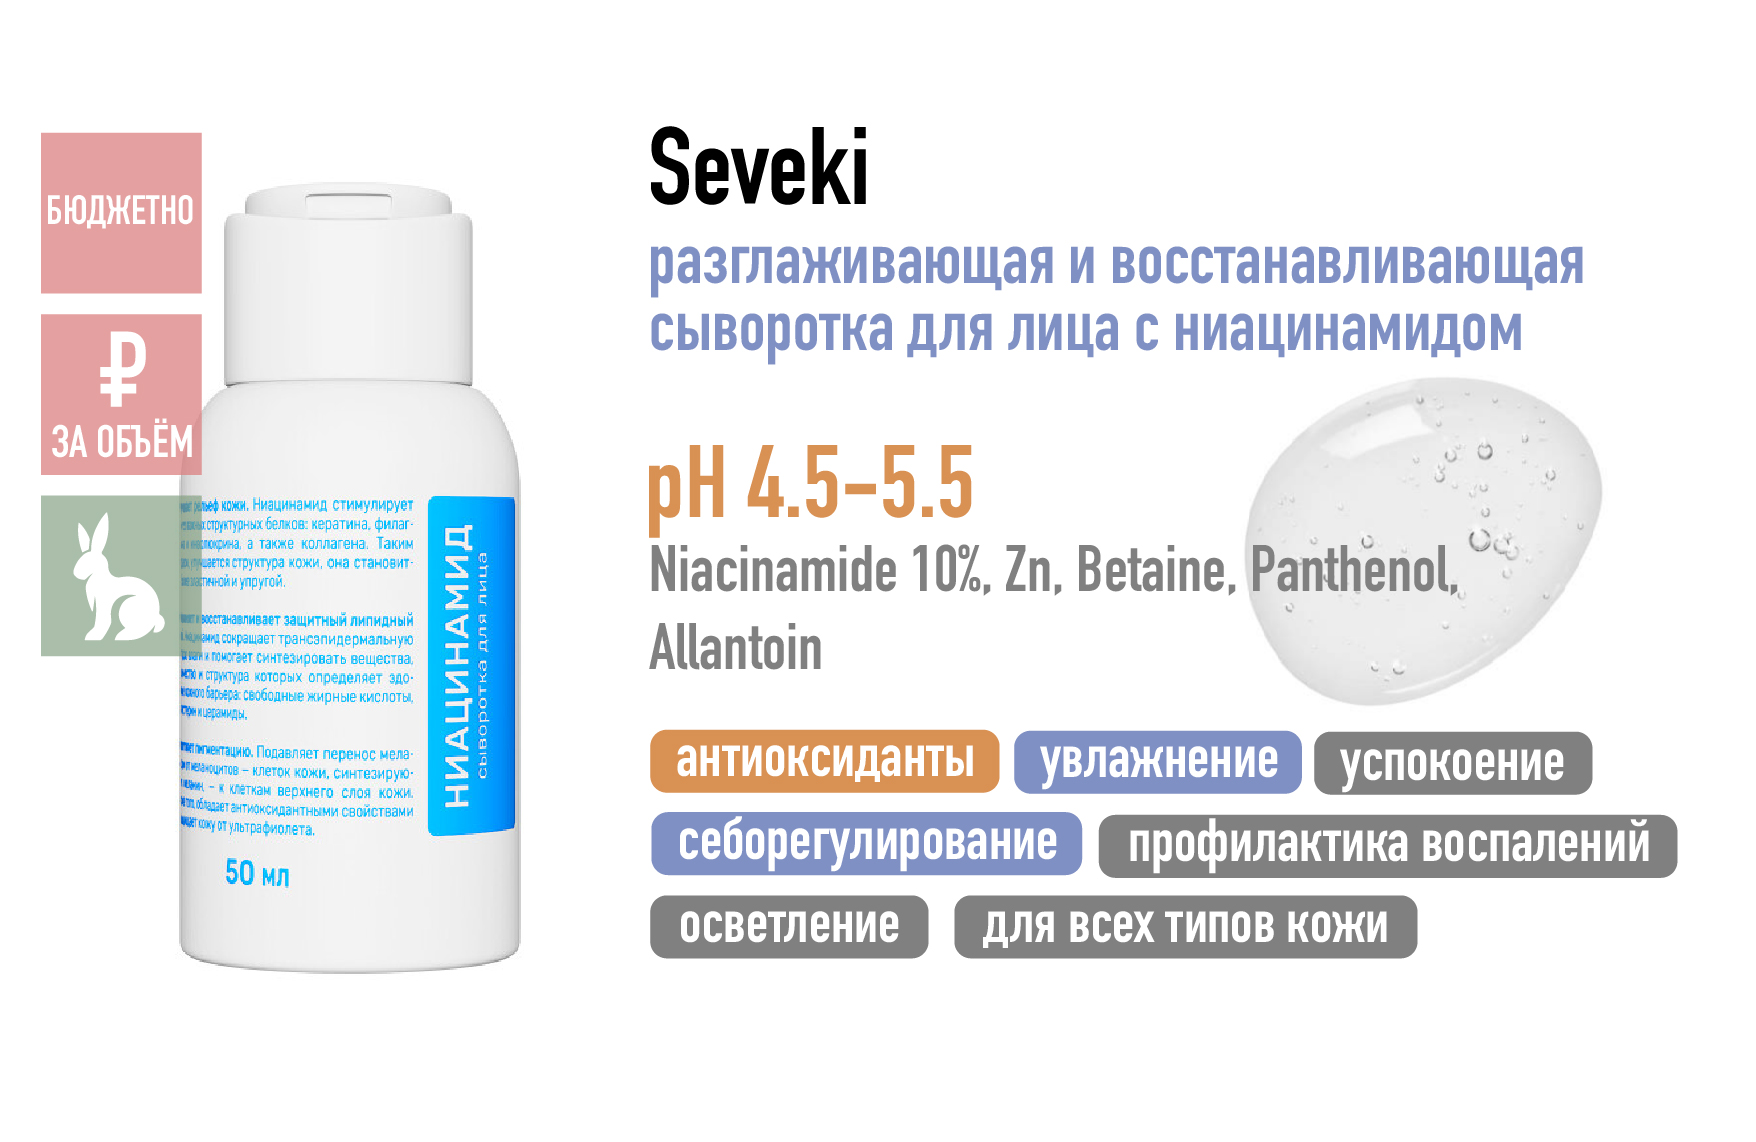 Seveki / Разглаживающая и восстанавливающая сыворотка для лица с ниацинамидом